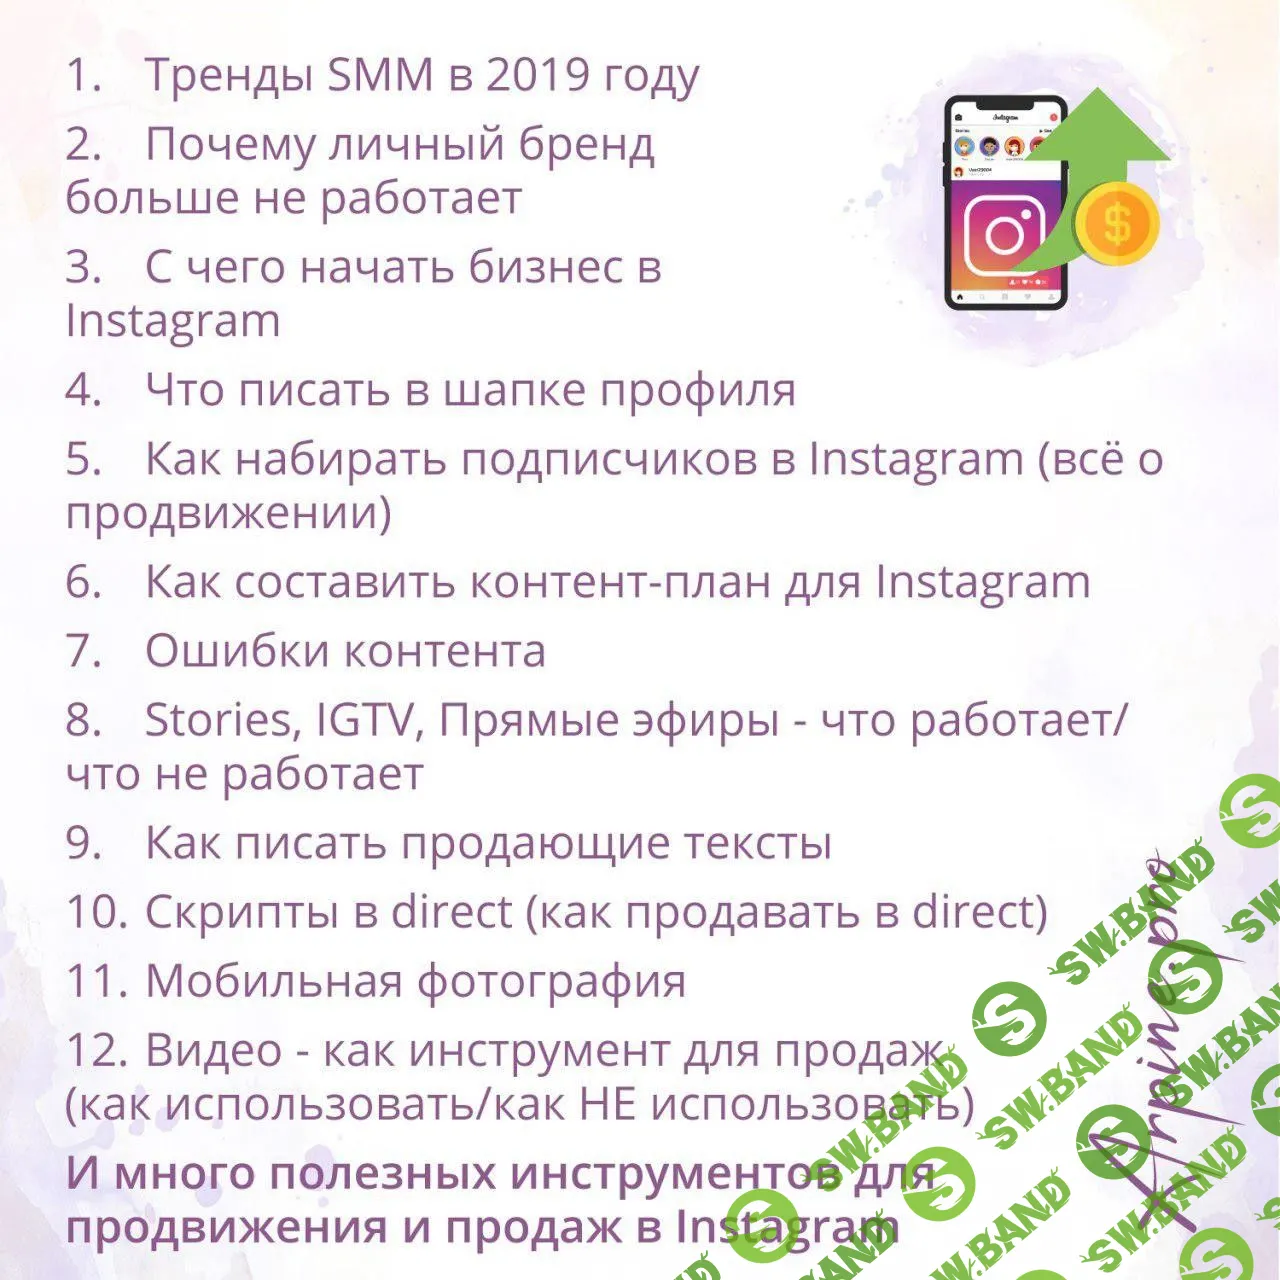 [Арпине Саркисян] Продвижение и продажи в Instagram. Тренды SMM 2019 (2018)